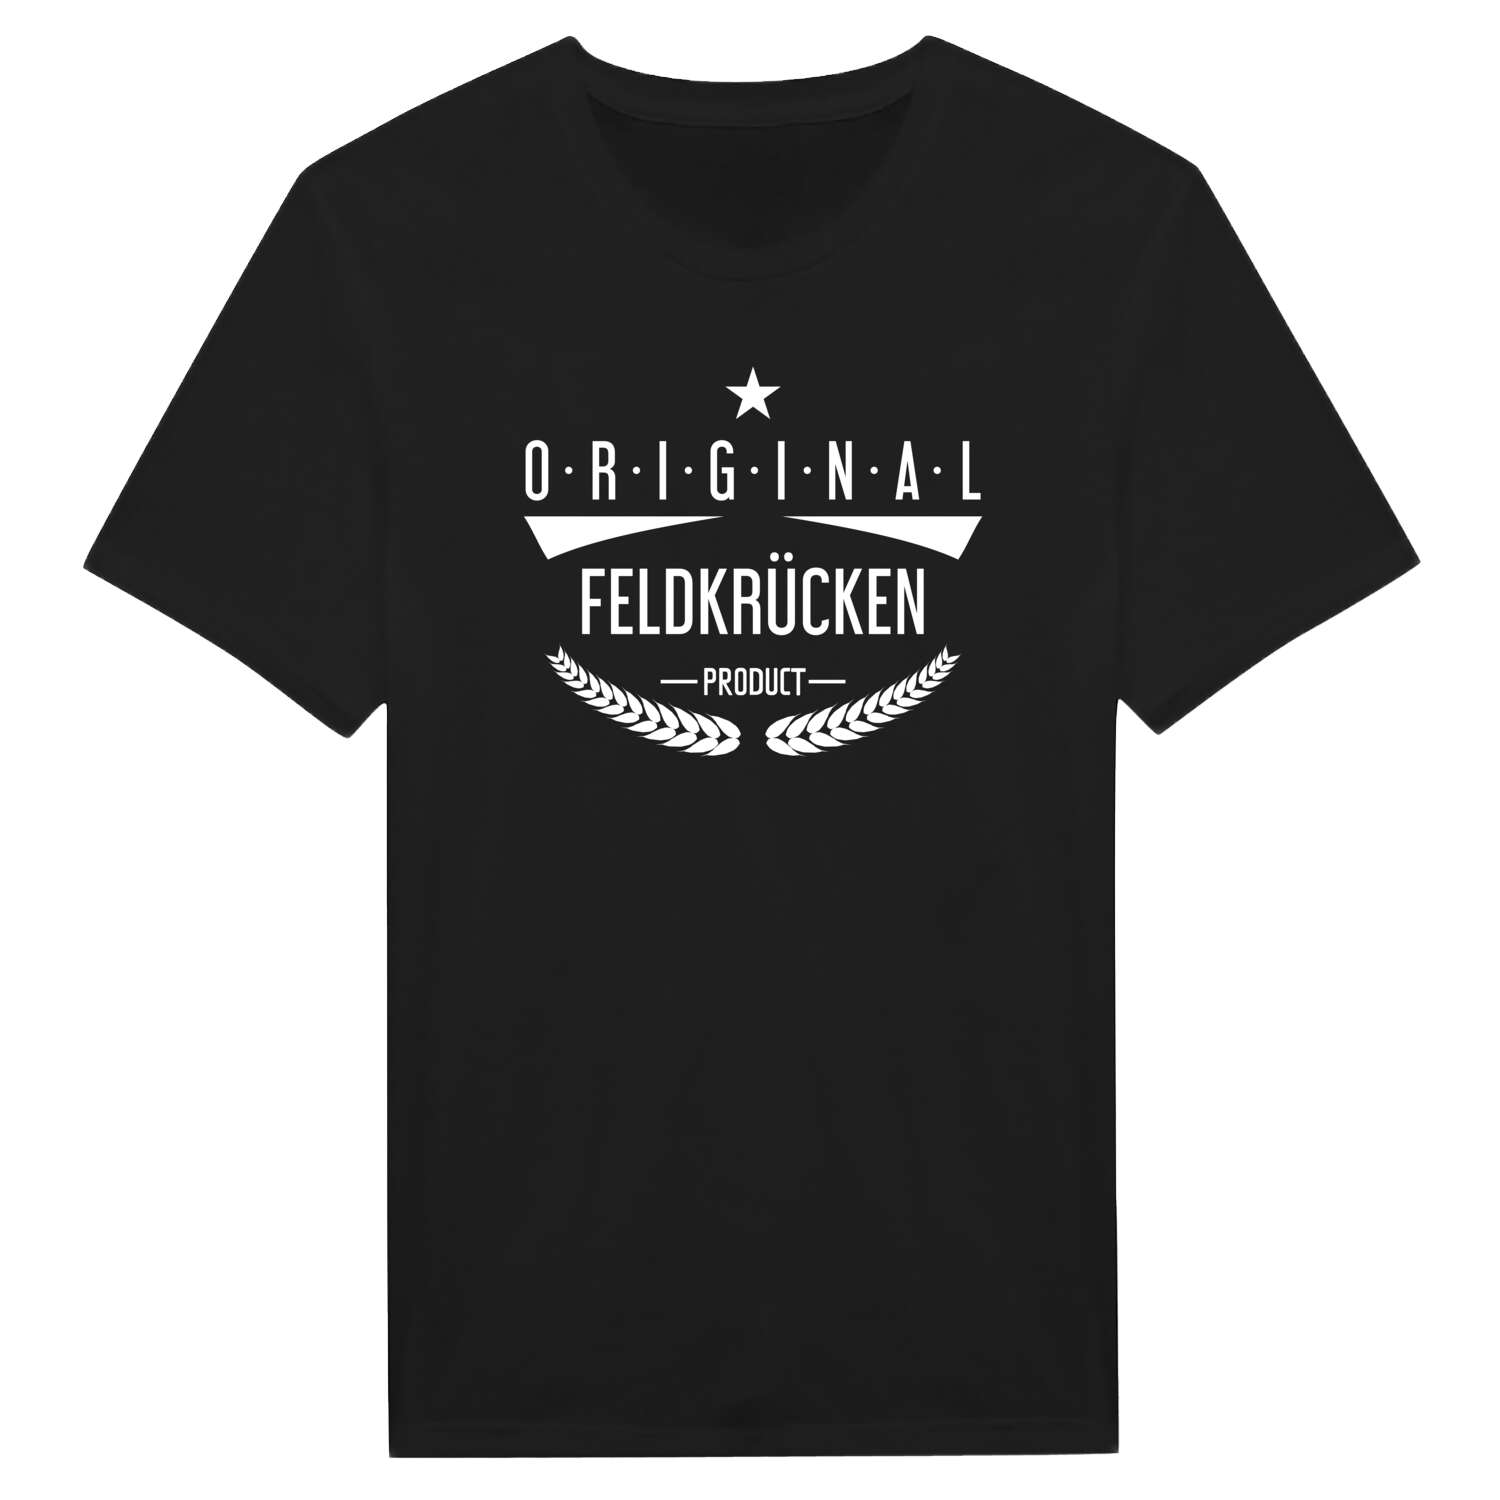 Feldkrücken T-Shirt »Original Product«